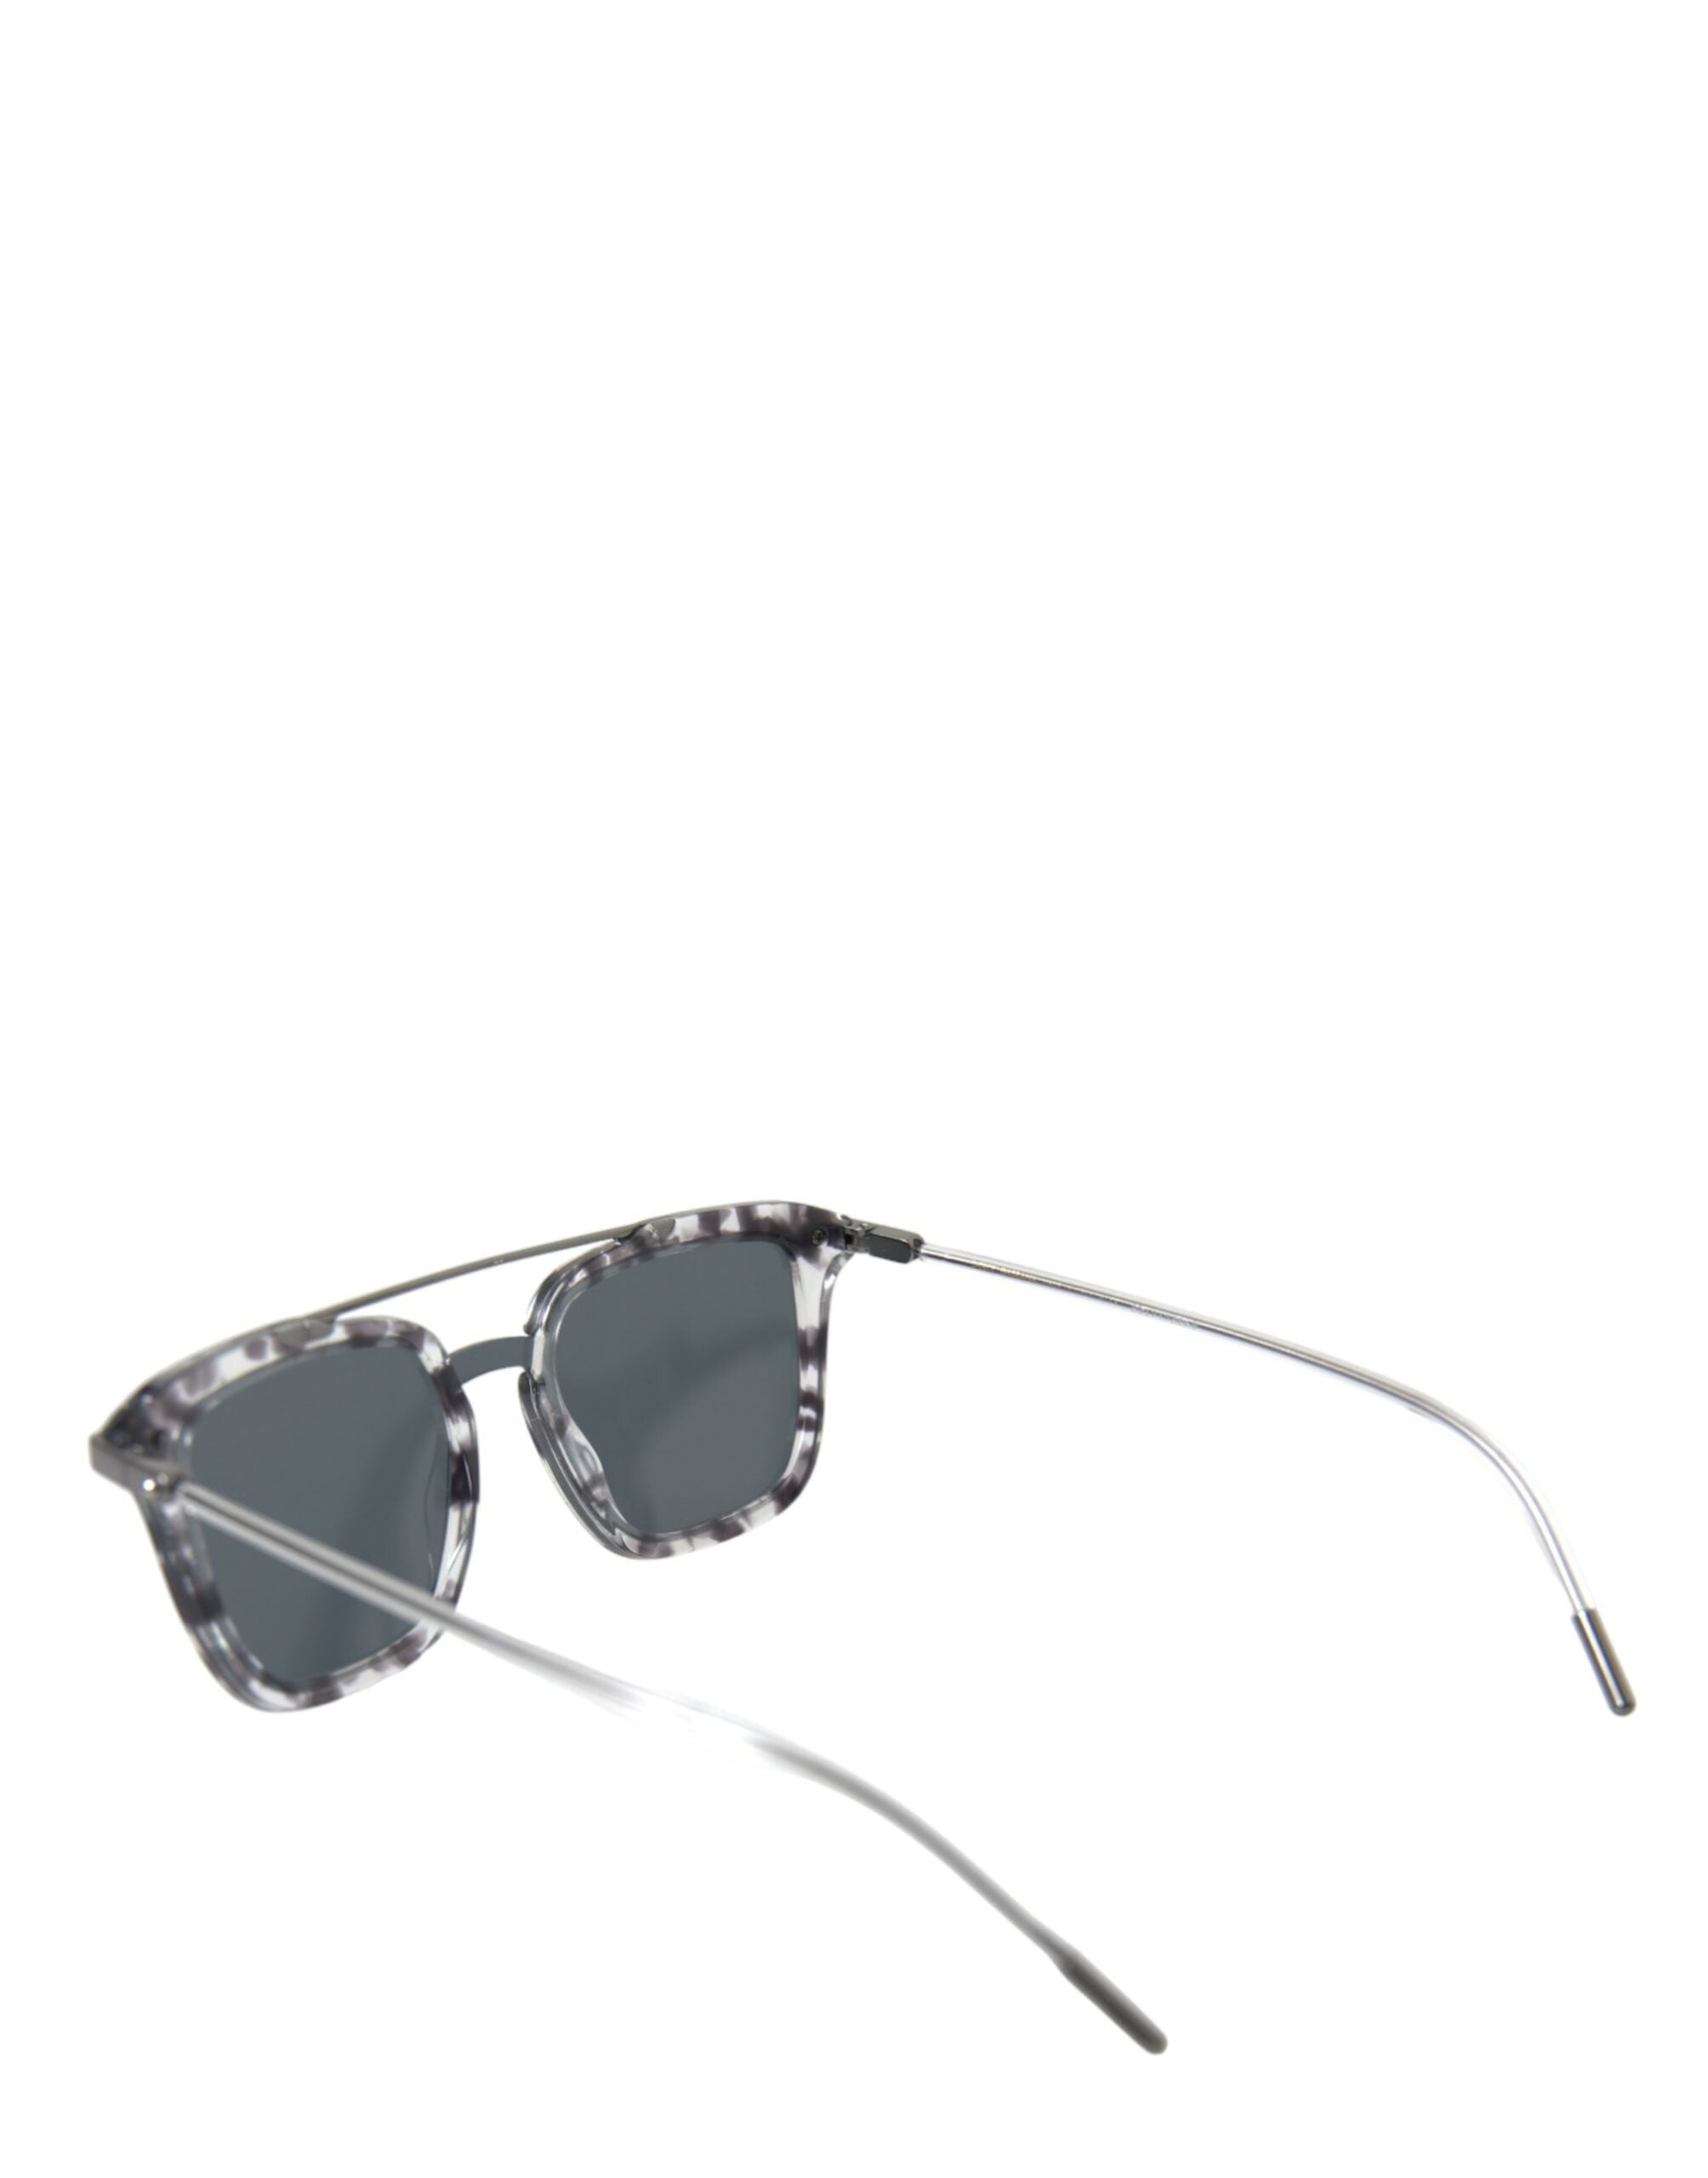 Dolce & Gabbana Sleek Grey Acetate Men's Sunglasses